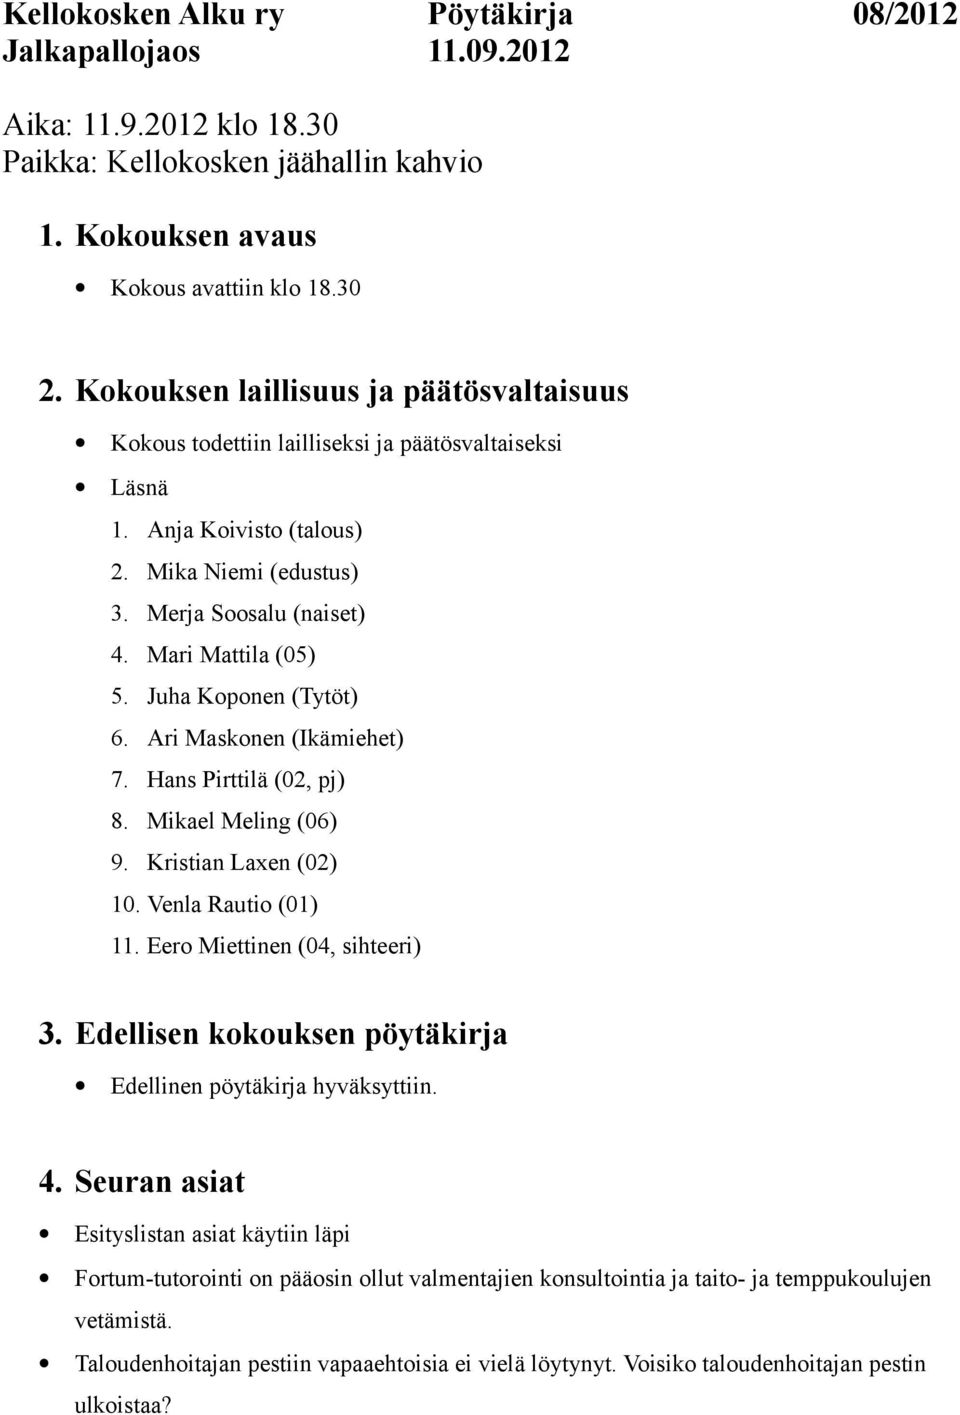 Juha Koponen (Tytöt) 6. Ari Maskonen (Ikämiehet) 7. Hans Pirttilä (02, pj) 8. Mikael Meling (06) 9. Kristian Laxen (02) 10. Venla Rautio (01) 11. Eero Miettinen (04, sihteeri) 3.